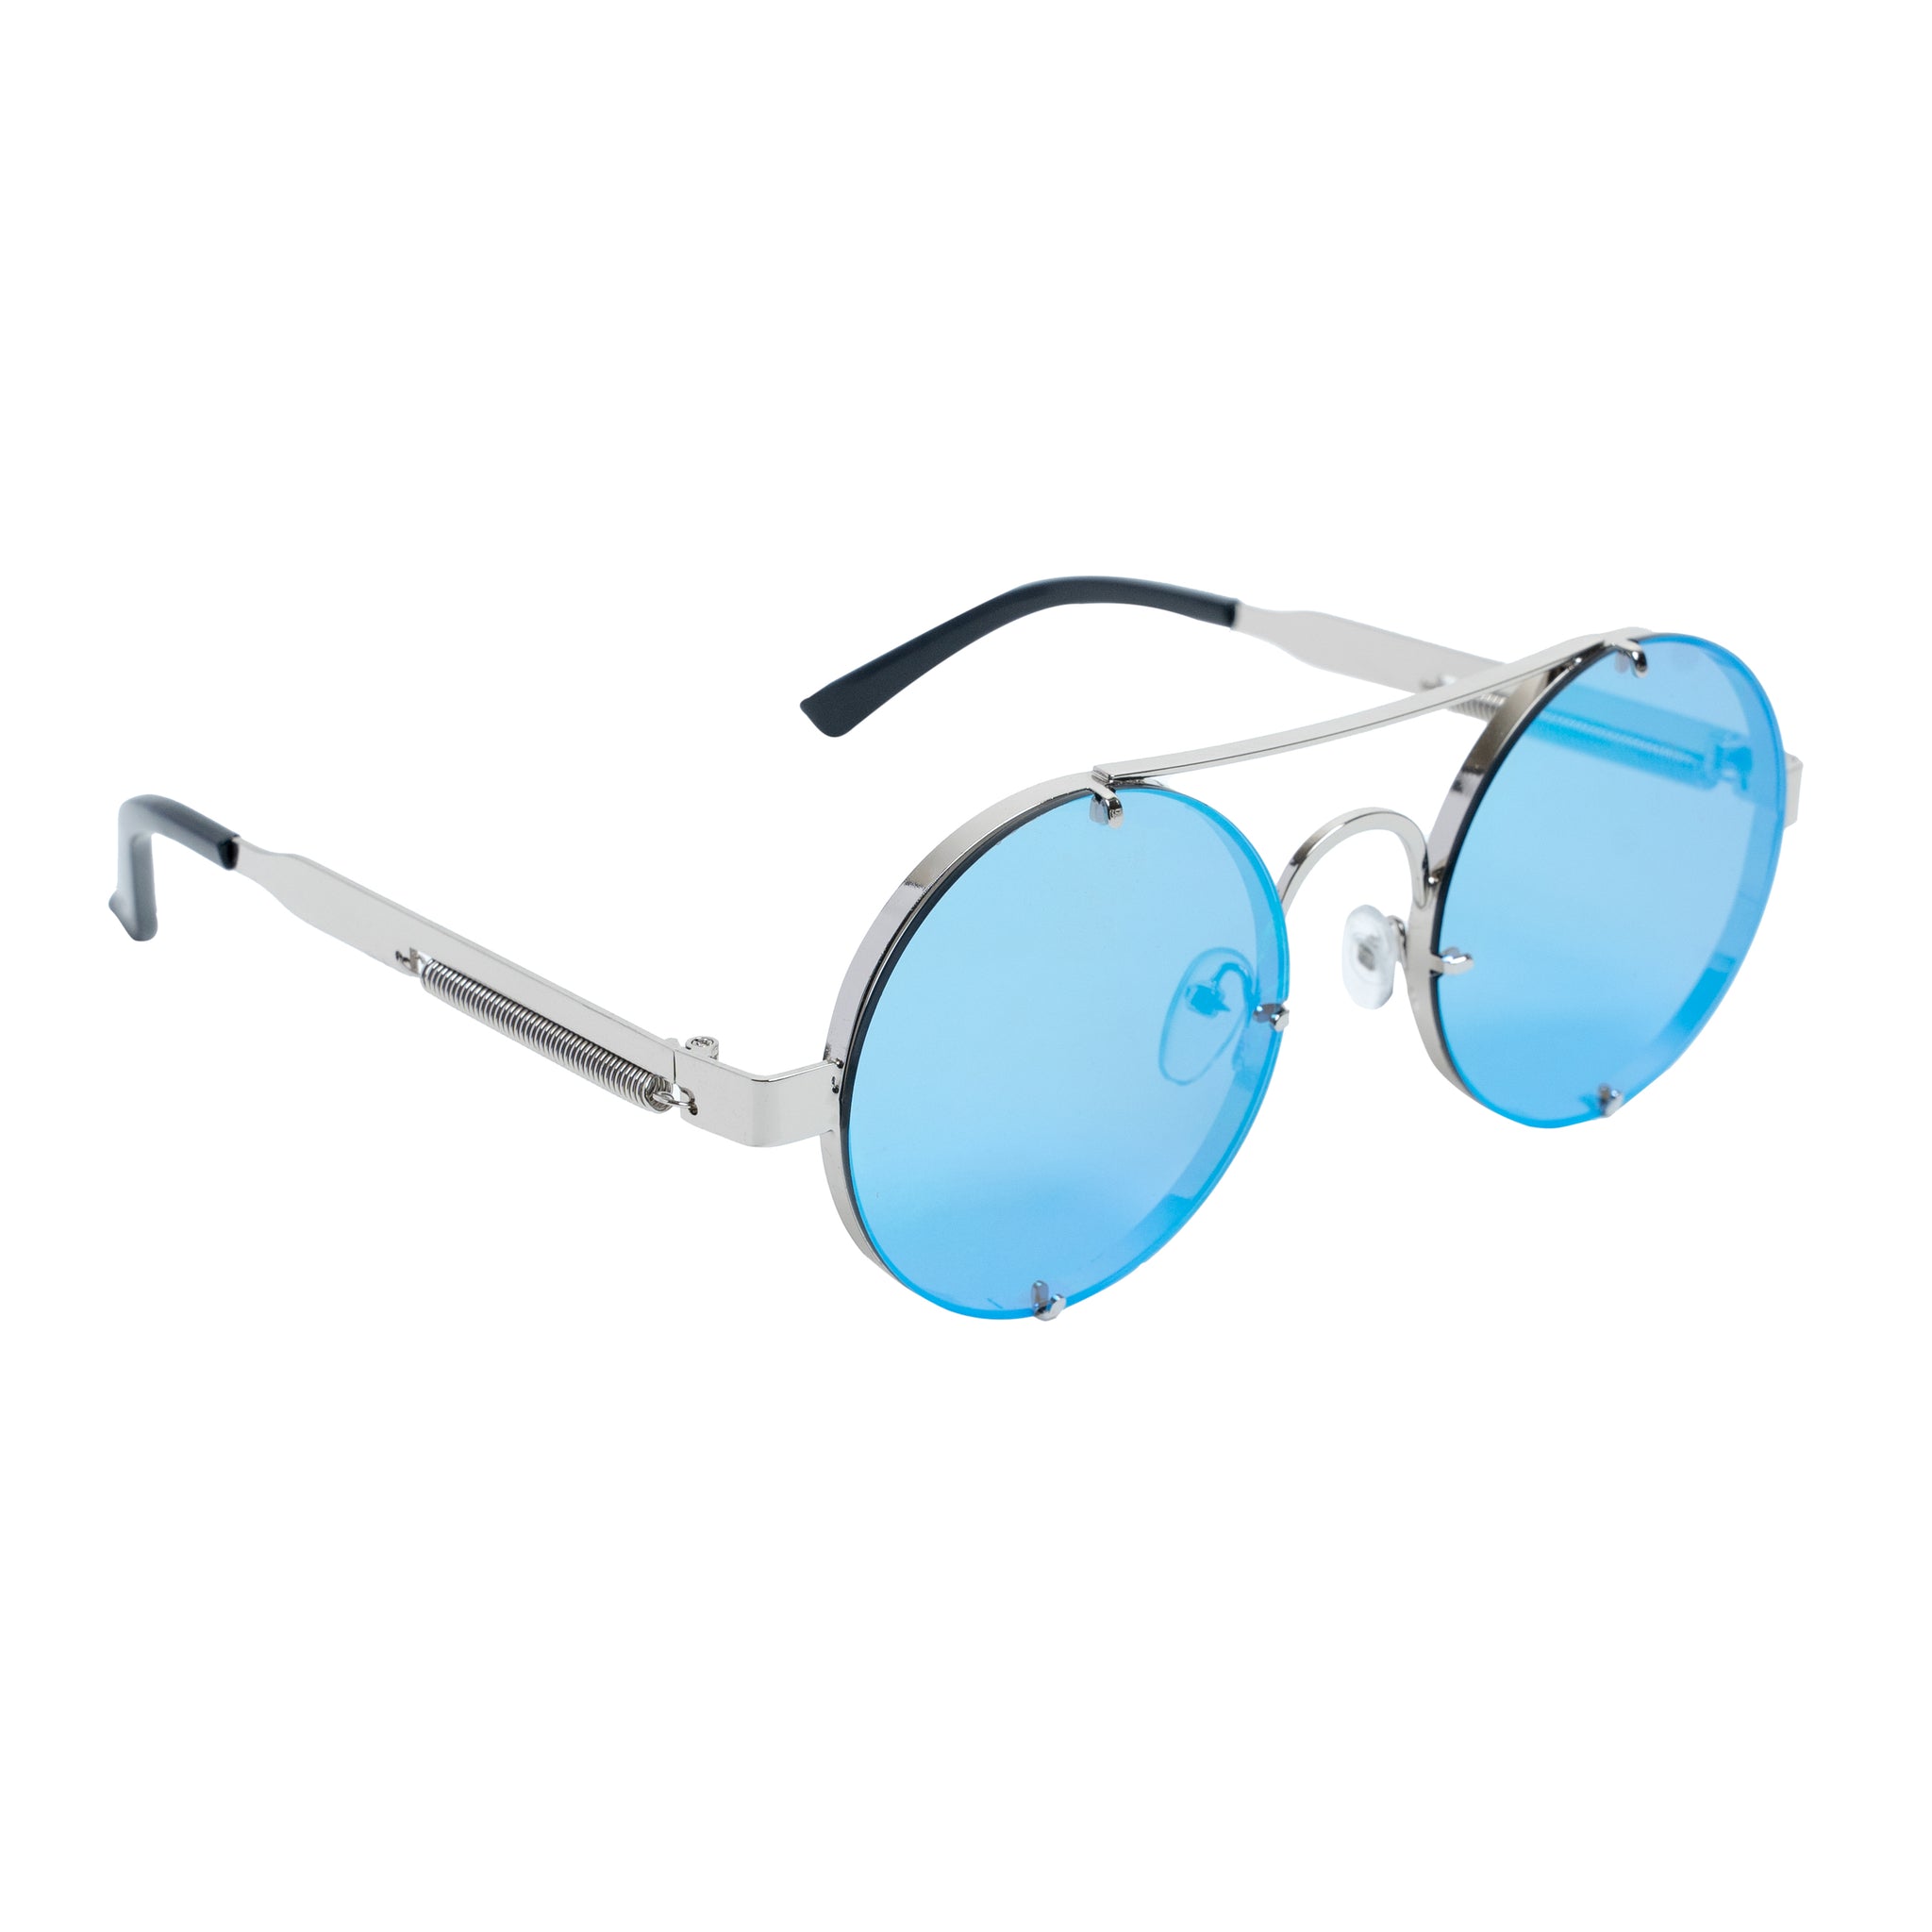 Chokore Retro Polarized Sunglasses (Blue & Silver)